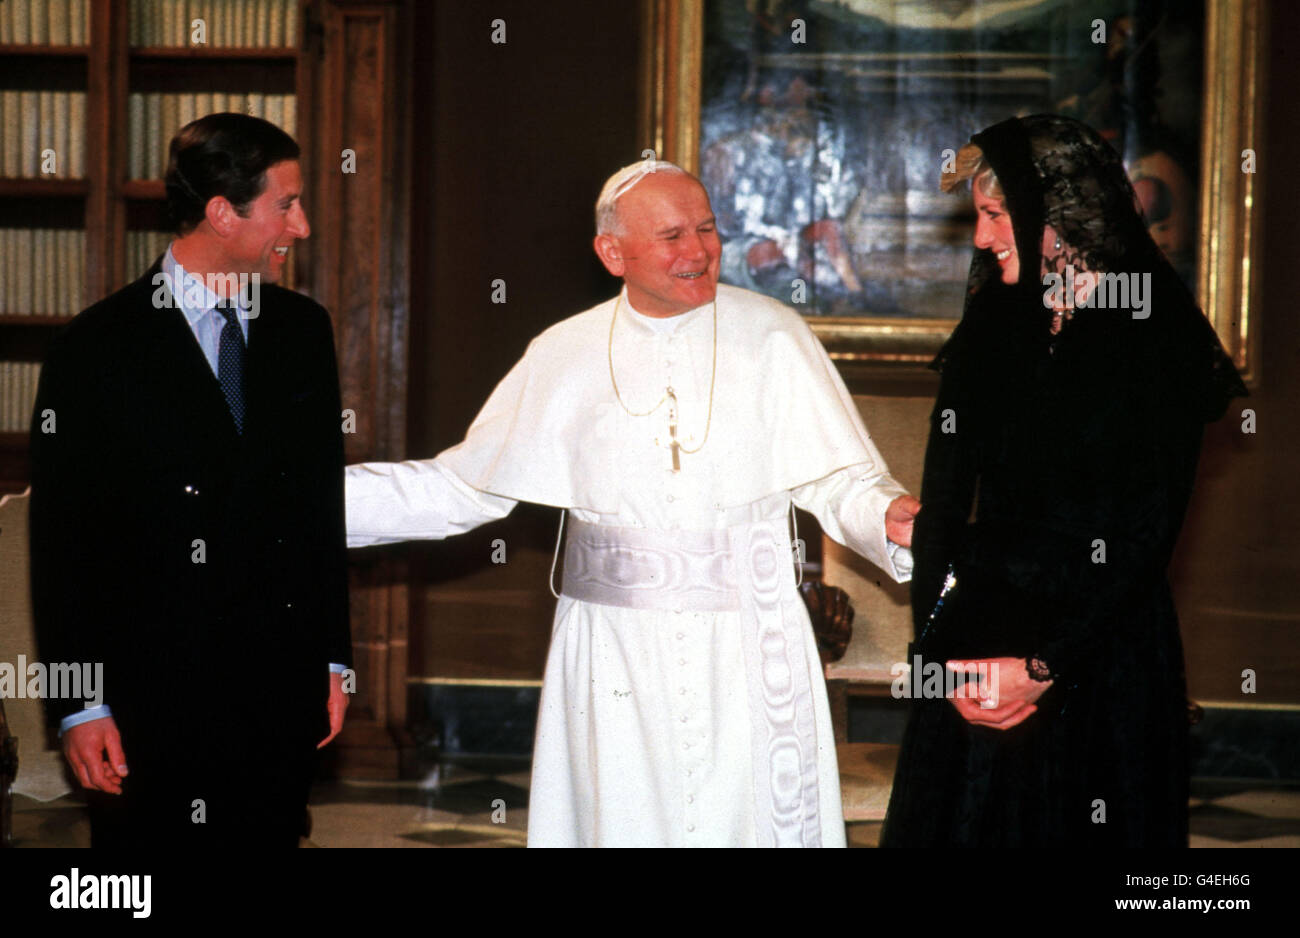 Le Prince et la Princesse de Galles avec le Pape après leur audience privée au Vatican à Rome, lors de la visite officielle de 17 jours du couple royal en Italie. Banque D'Images